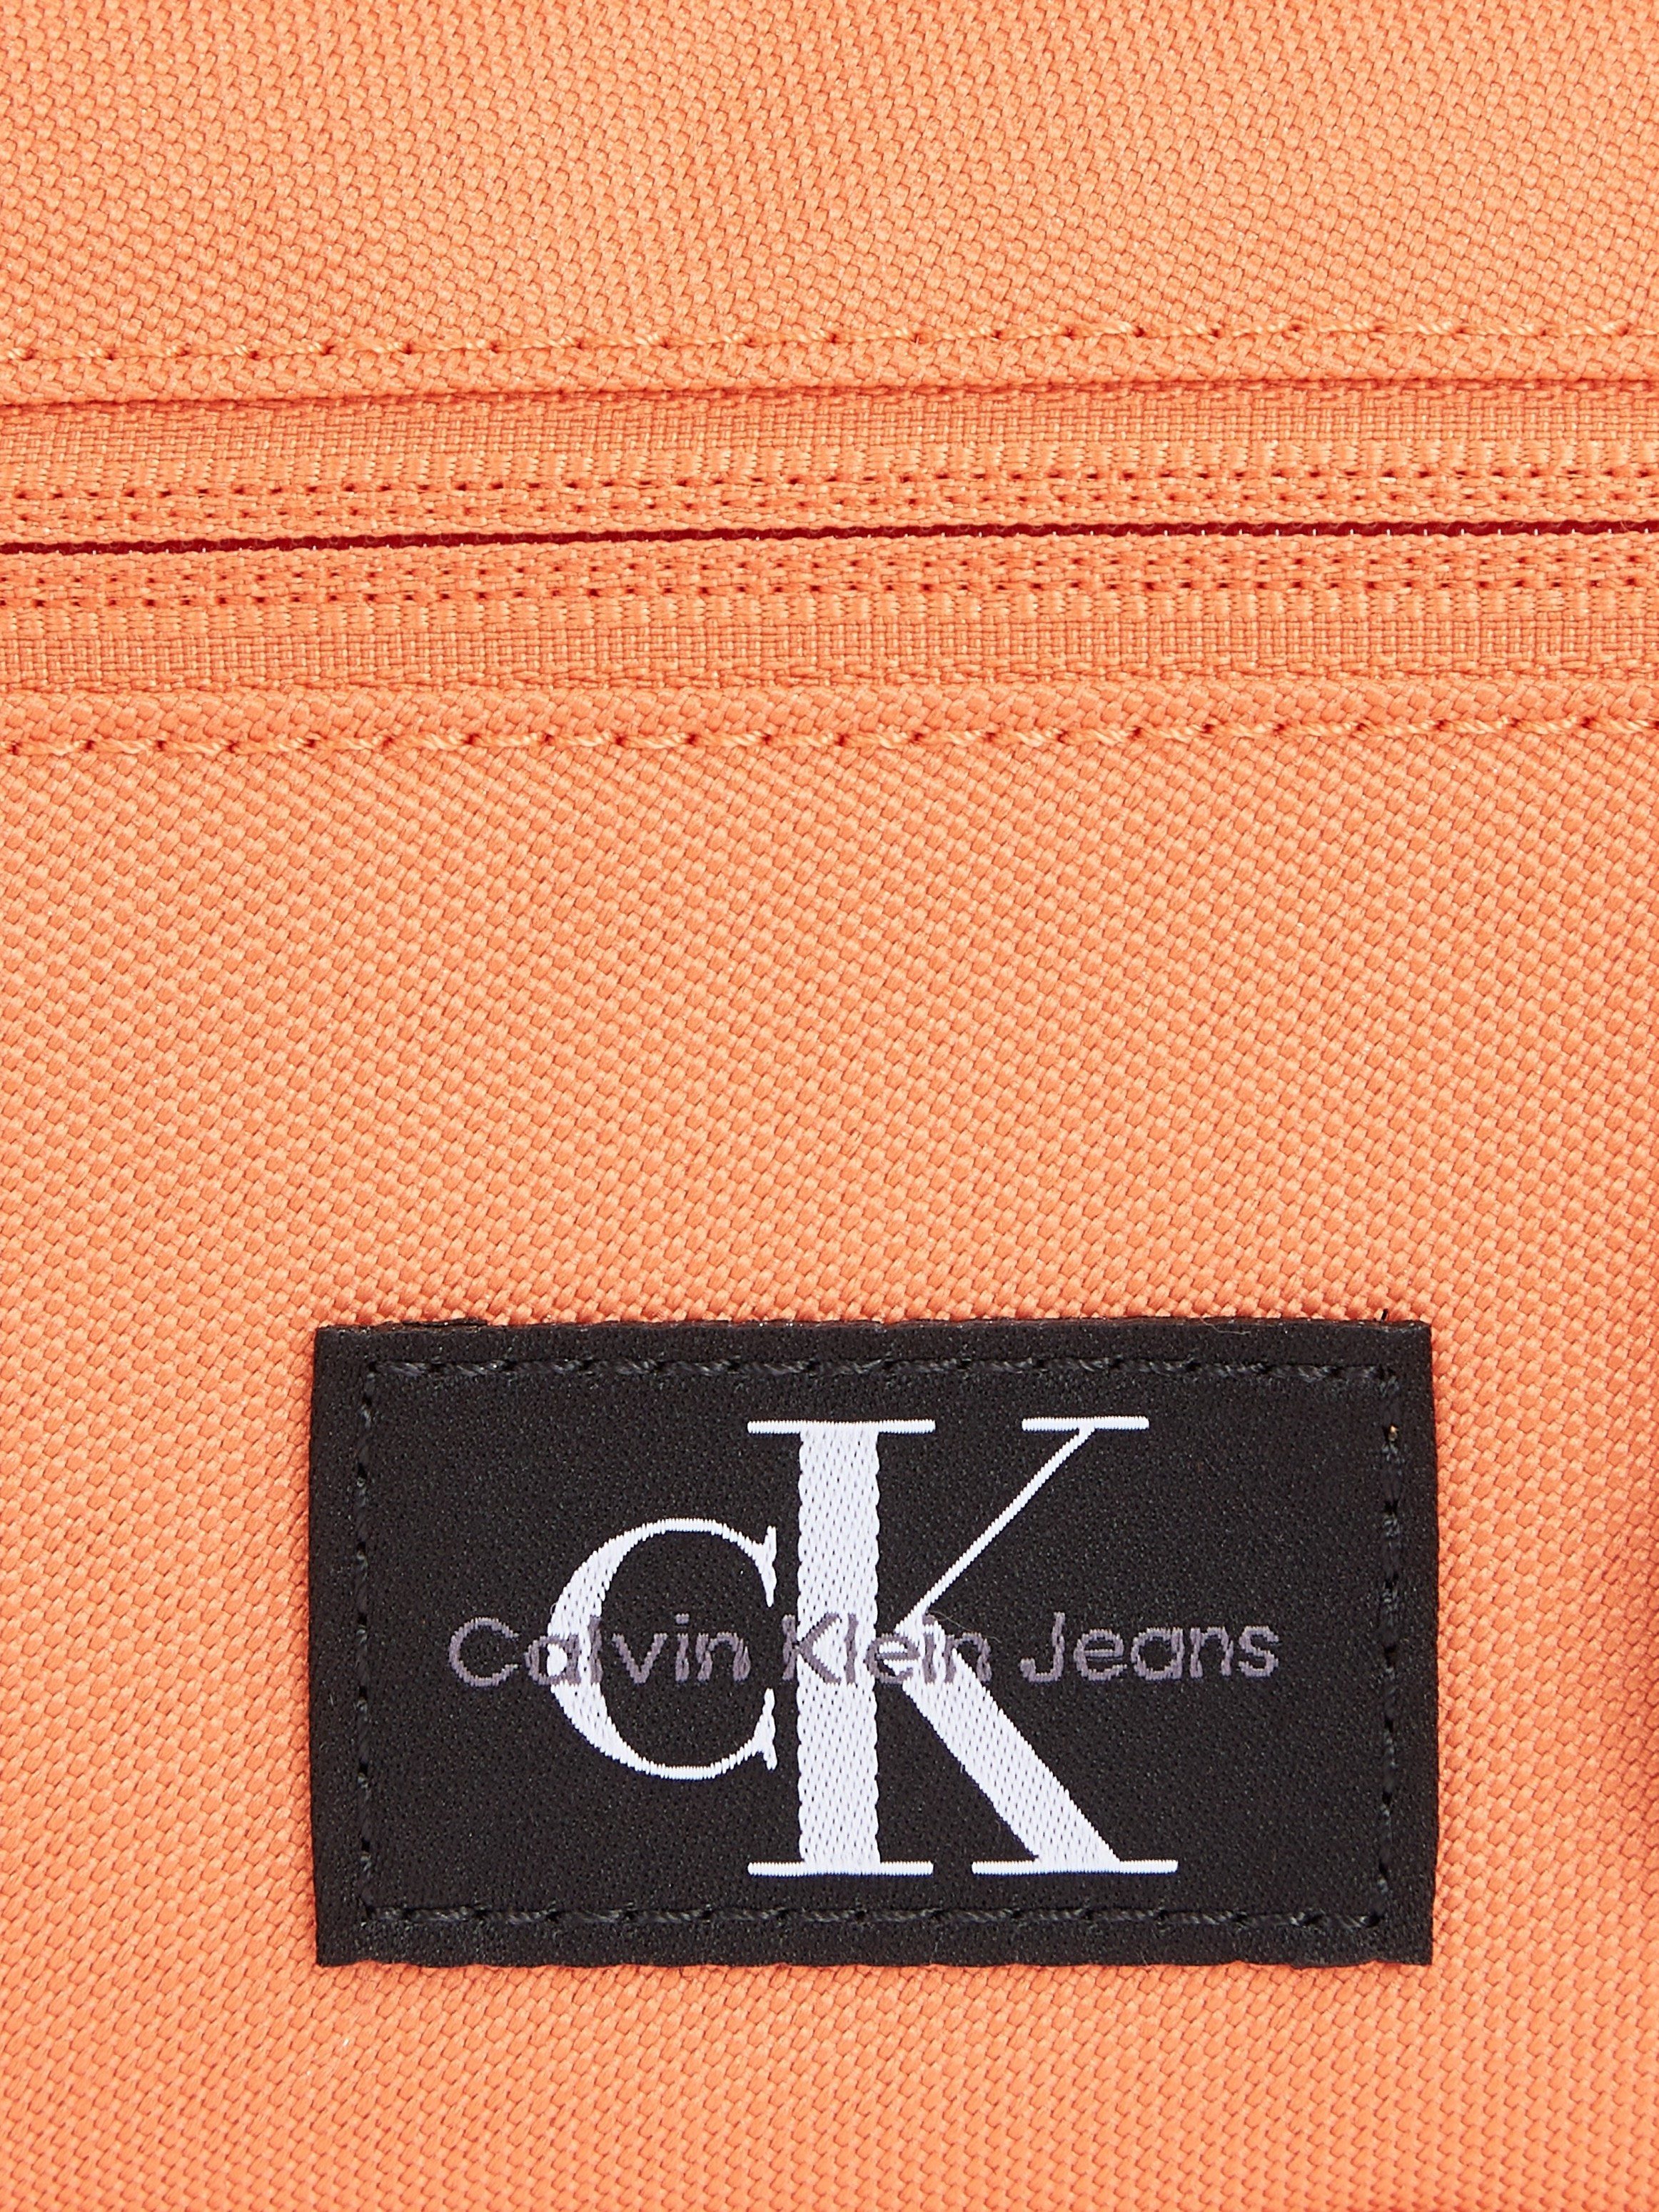 BAG21 CAMERA Mini ESSENTIALS Design Calvin Bag Jeans koralle praktischen SPORT im Klein W,